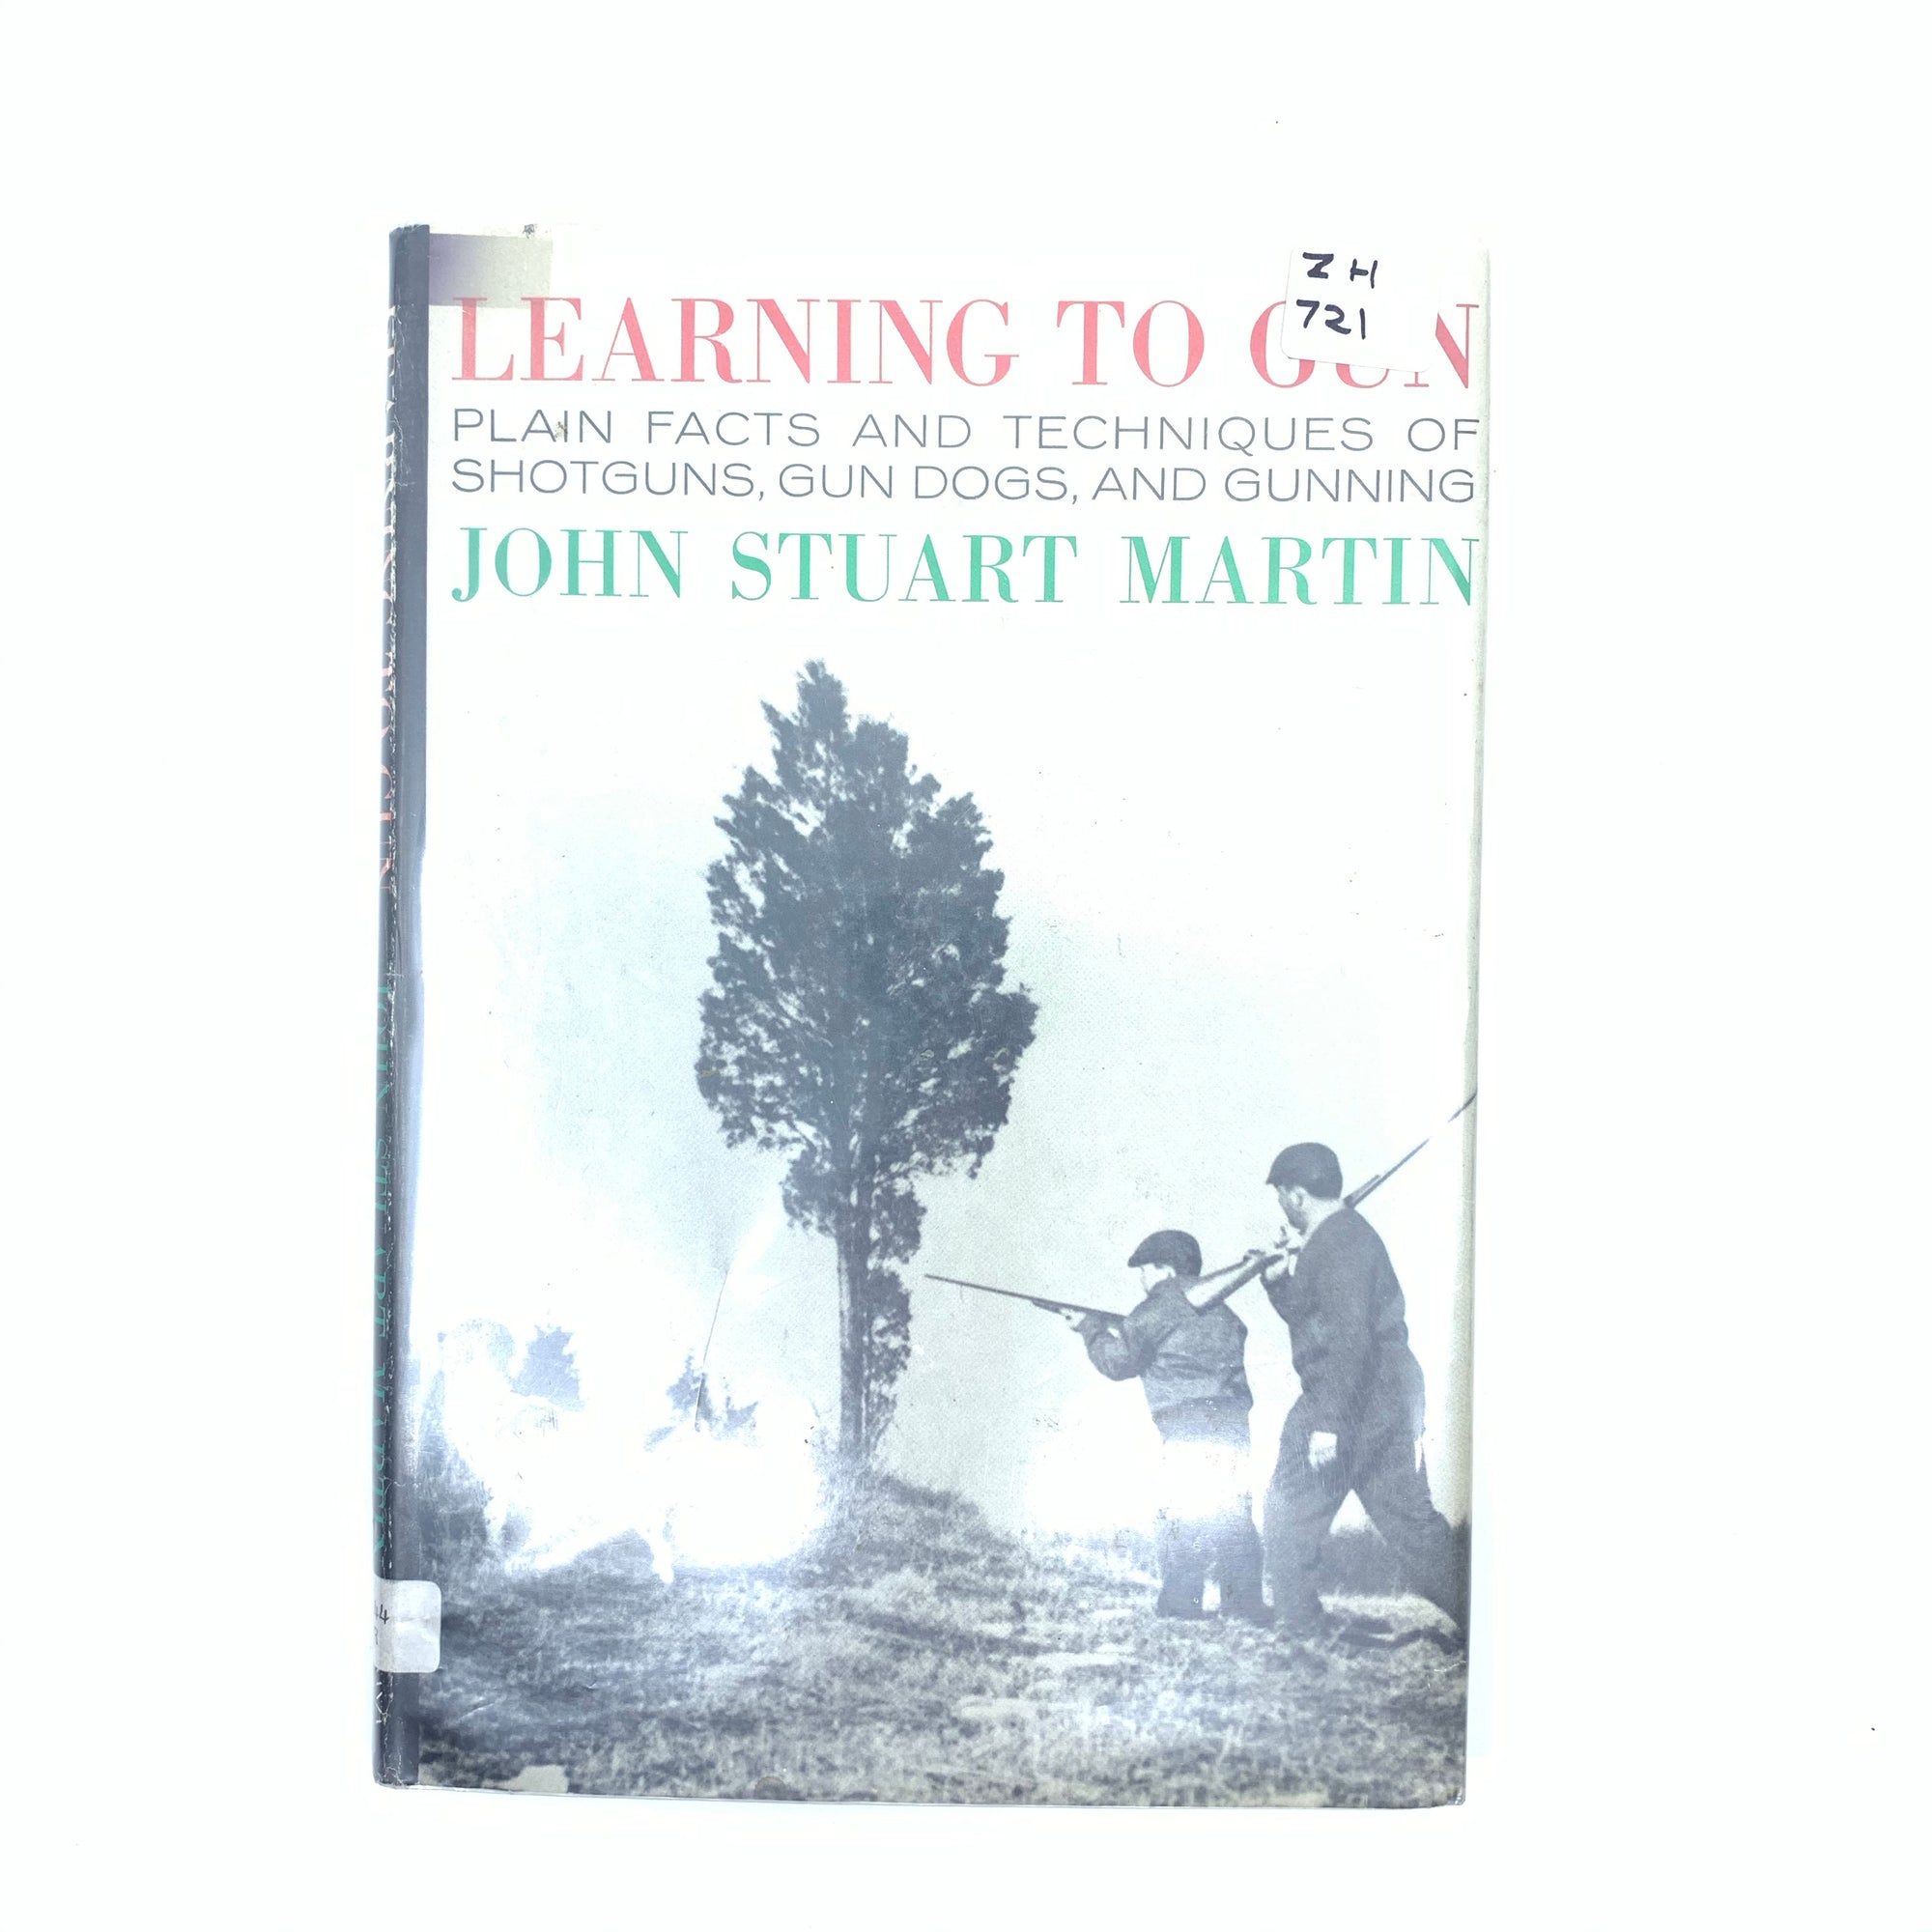 Learing to Gun John Stuart Martin HC Dust Jacket 113 pgs